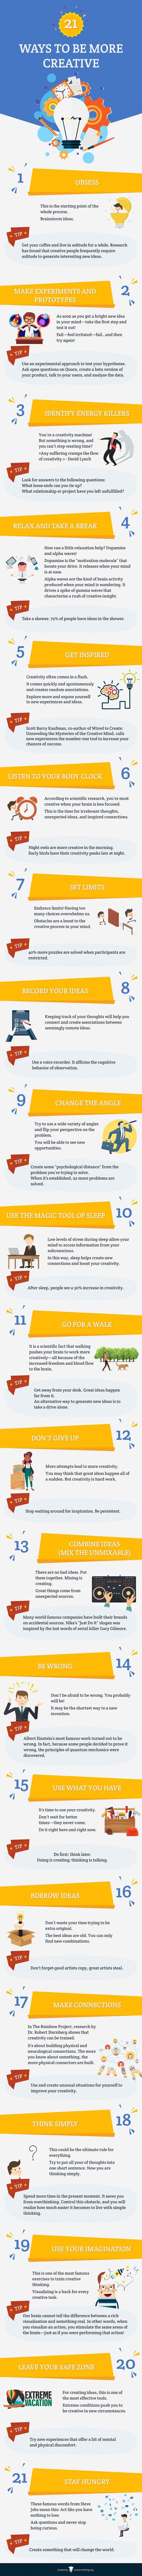 21 maneras de ser más creativo